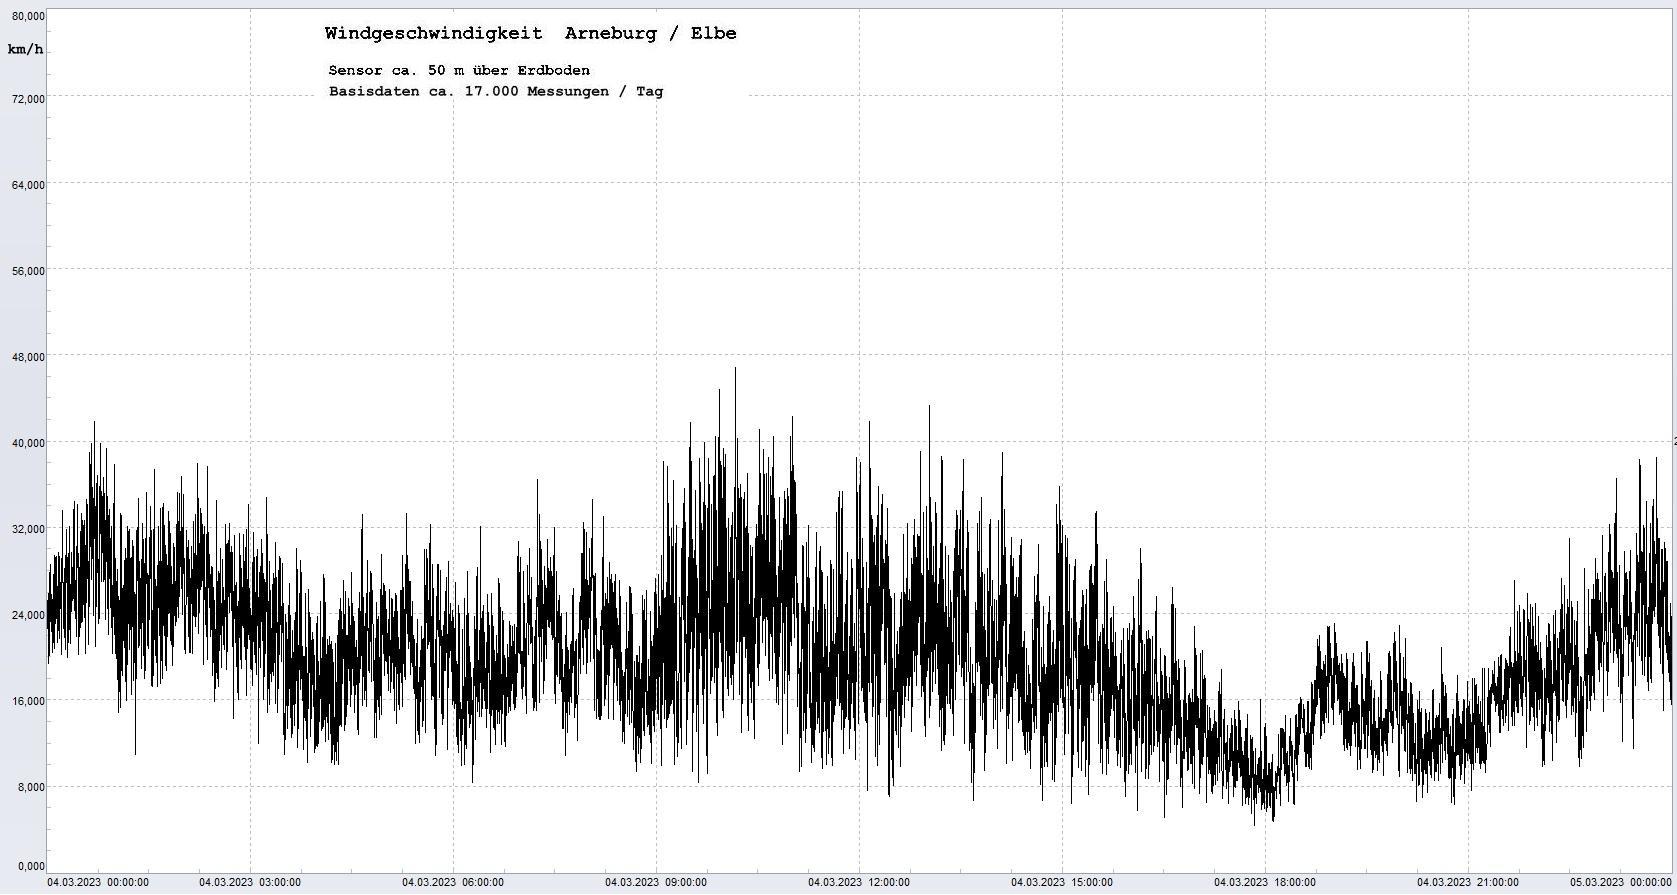 Arneburg Tages-Diagramm Winddaten, 04.03.2023
  Diagramm, Sensor auf Gebude, ca. 50 m ber Erdboden, Basis: 5s-Aufzeichnung